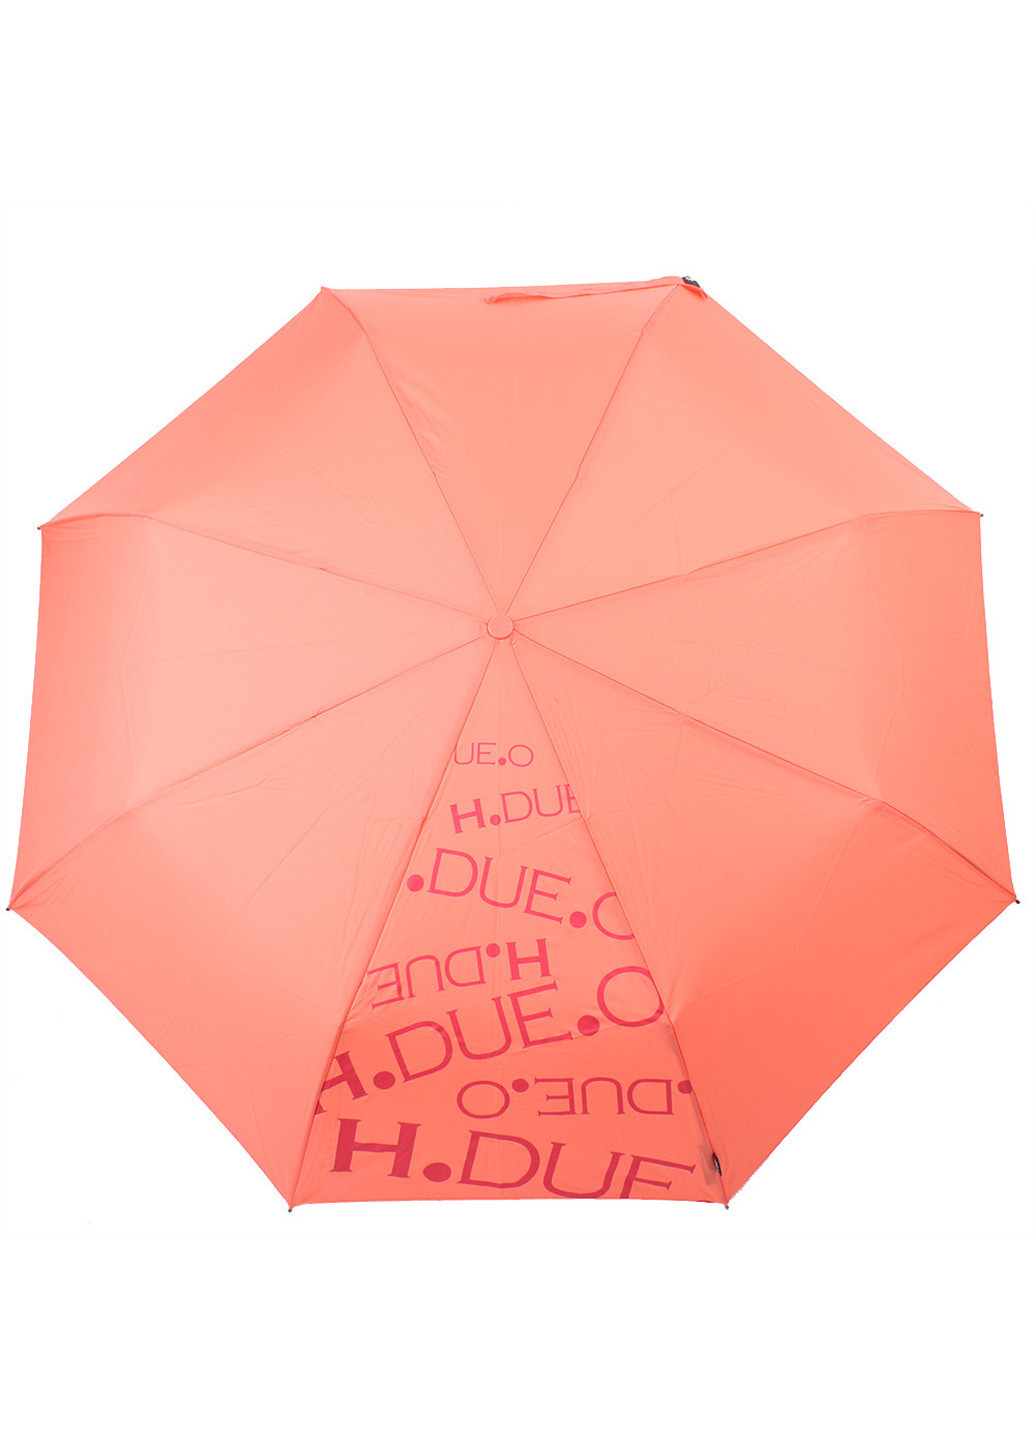 Женский складной зонт полный автомат 98 см H.DUE.O (194321073)